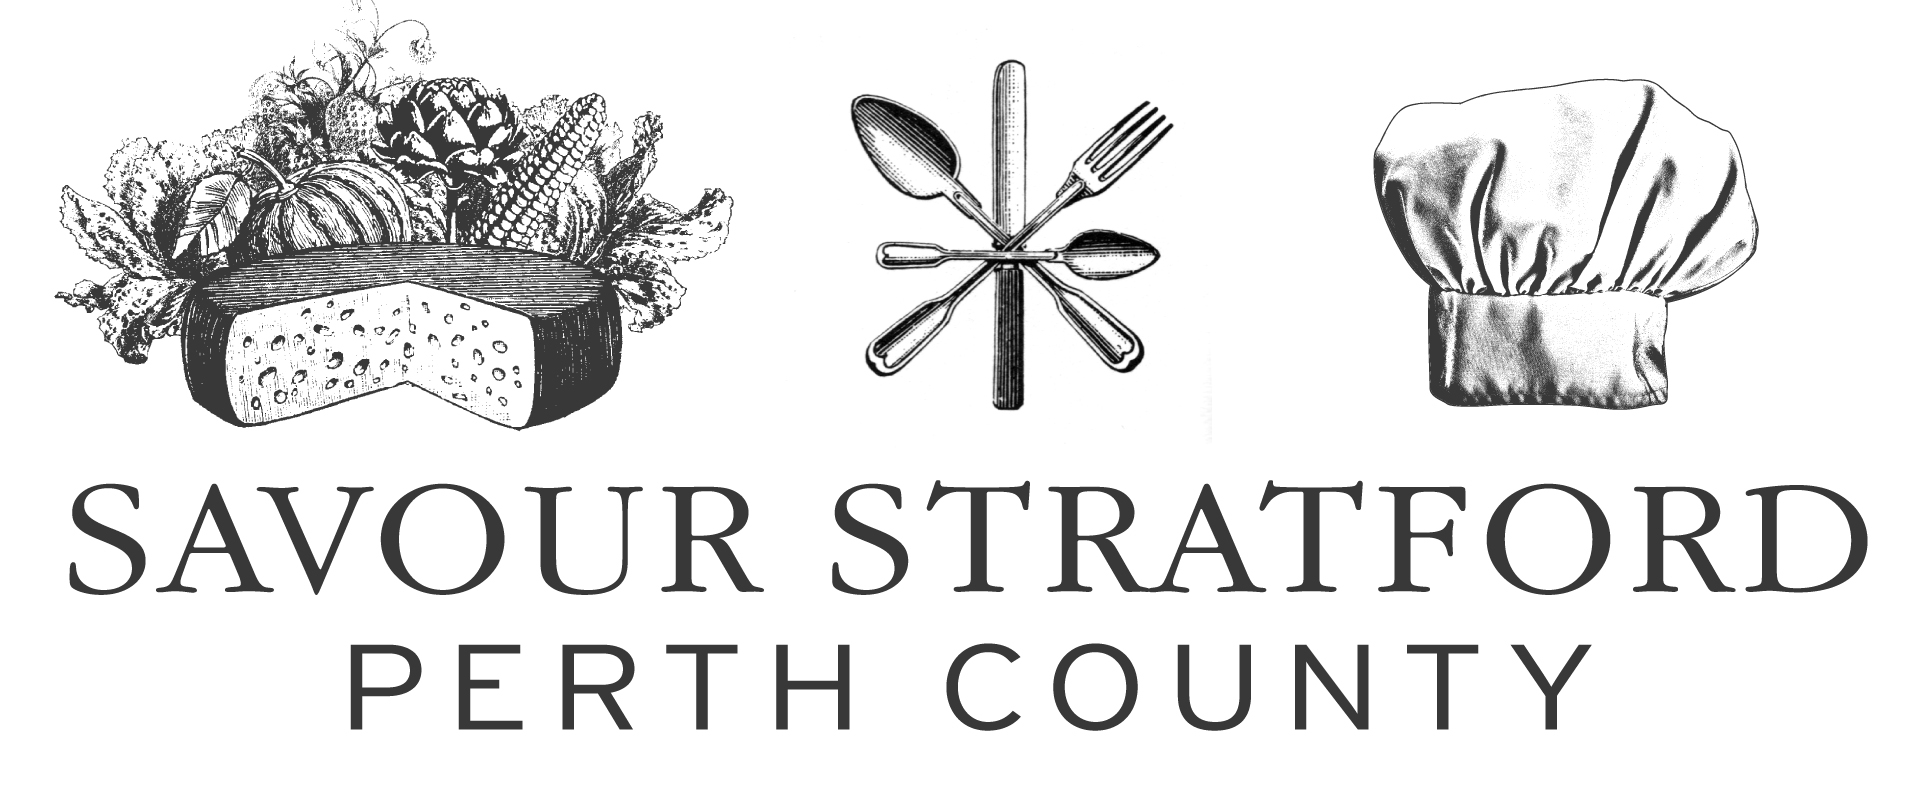 2011 Annual Perth County Regional Food Summit